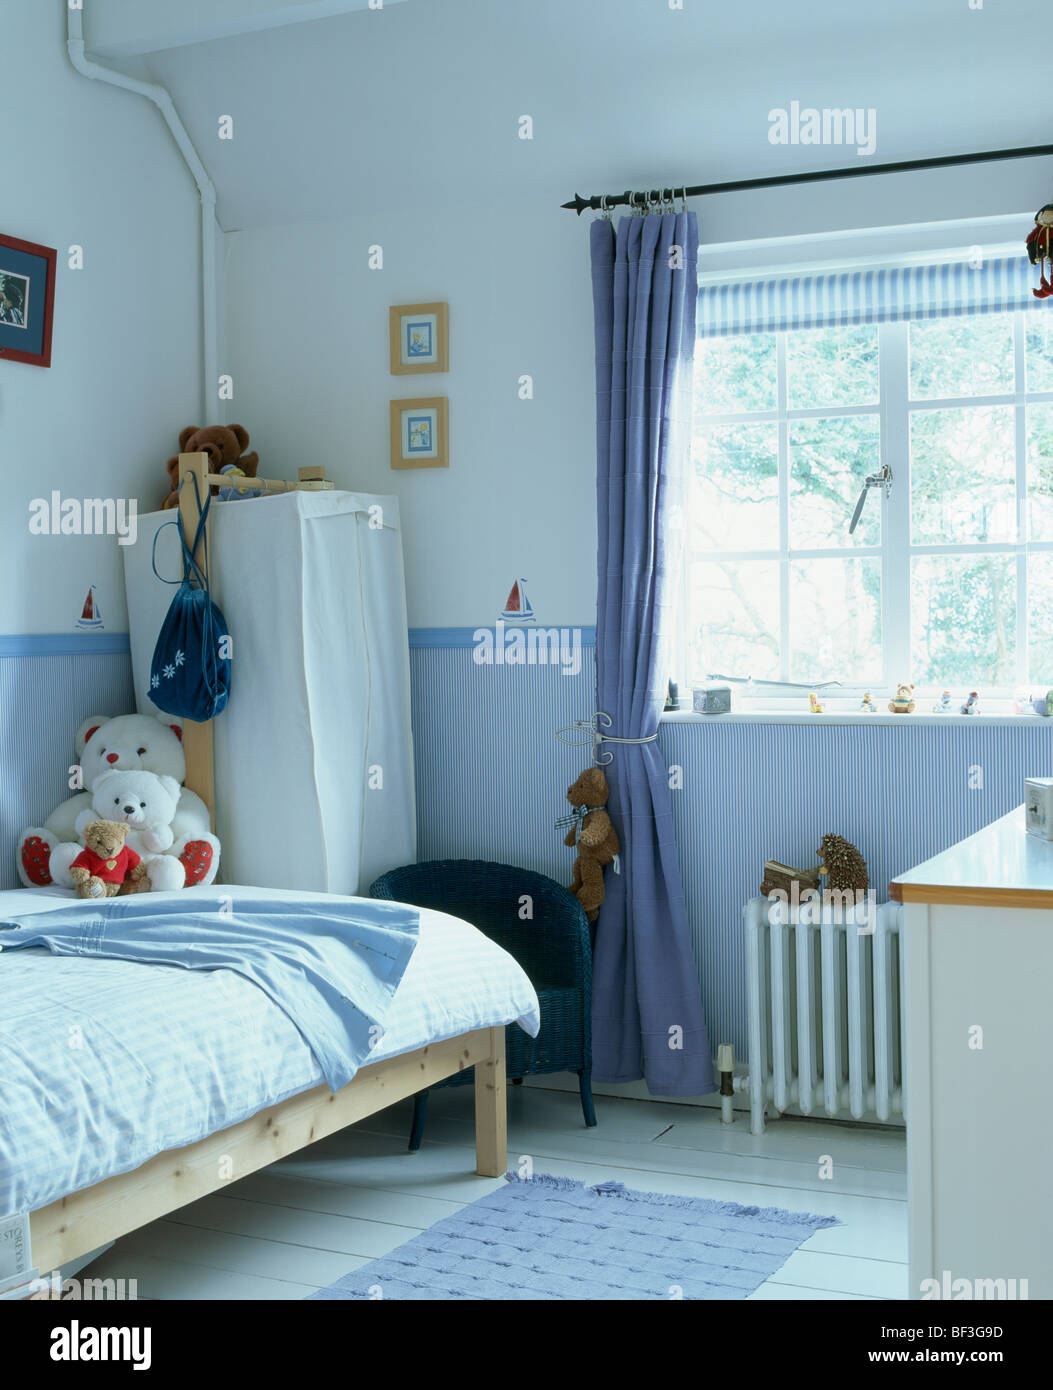 La tendina blu in corrispondenza della finestra in camera bambino con sfondo blu dado e tenda-armadio in un angolo della stanza Foto Stock